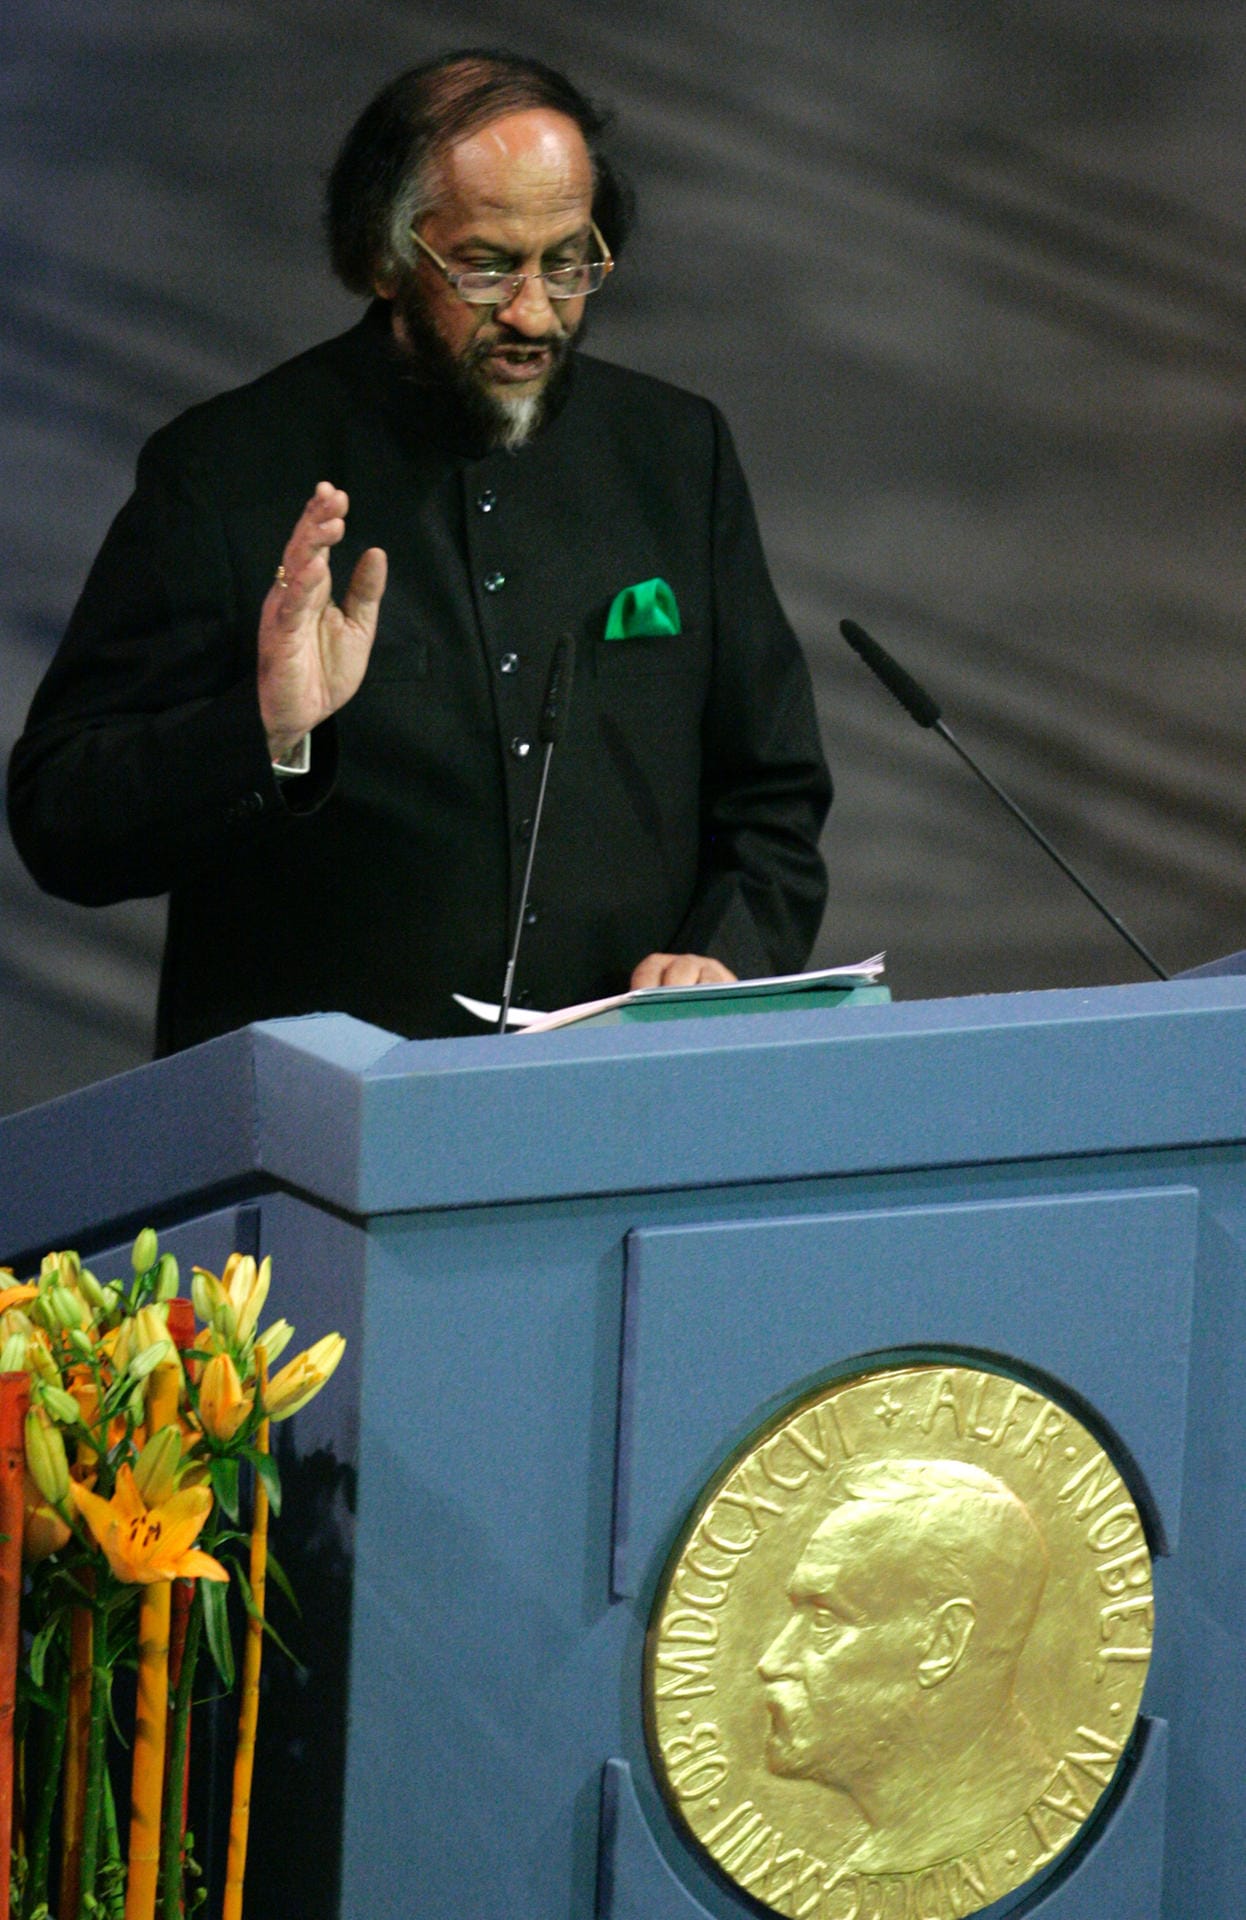 Rajendra Pachauri, 2007: Der damalige Chef des Intergovernmental Panel on Climate Change, zu Deutsch Weltklimarates, nimmt den Friedensnobelpreis im Namen der Organisation entgegen.